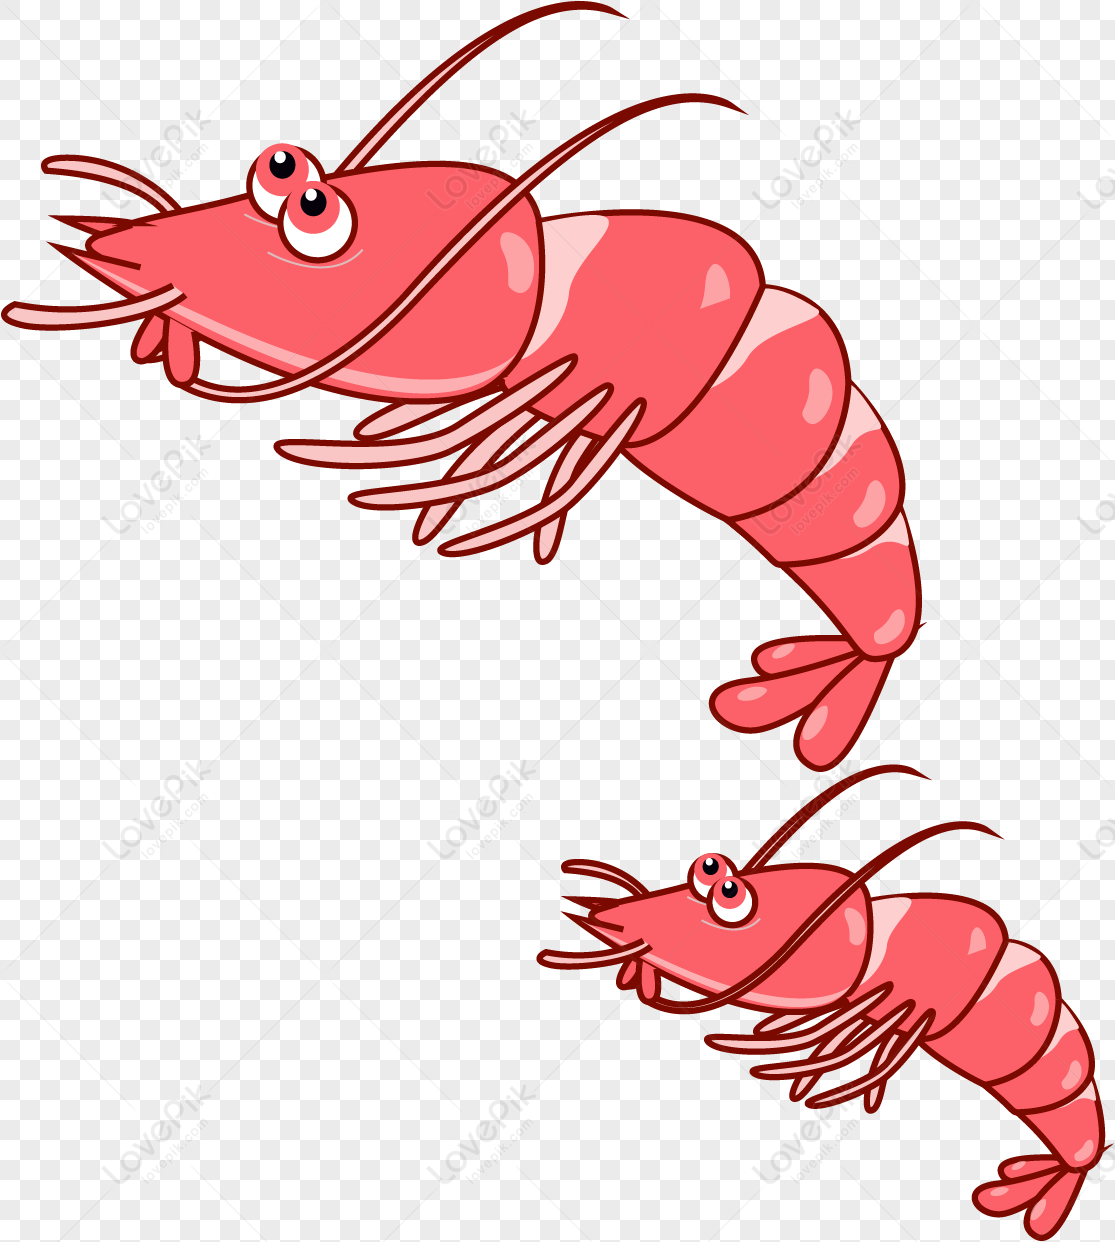 lovepik-gourmet-shrimp-png-image_401138490_wh1200.png